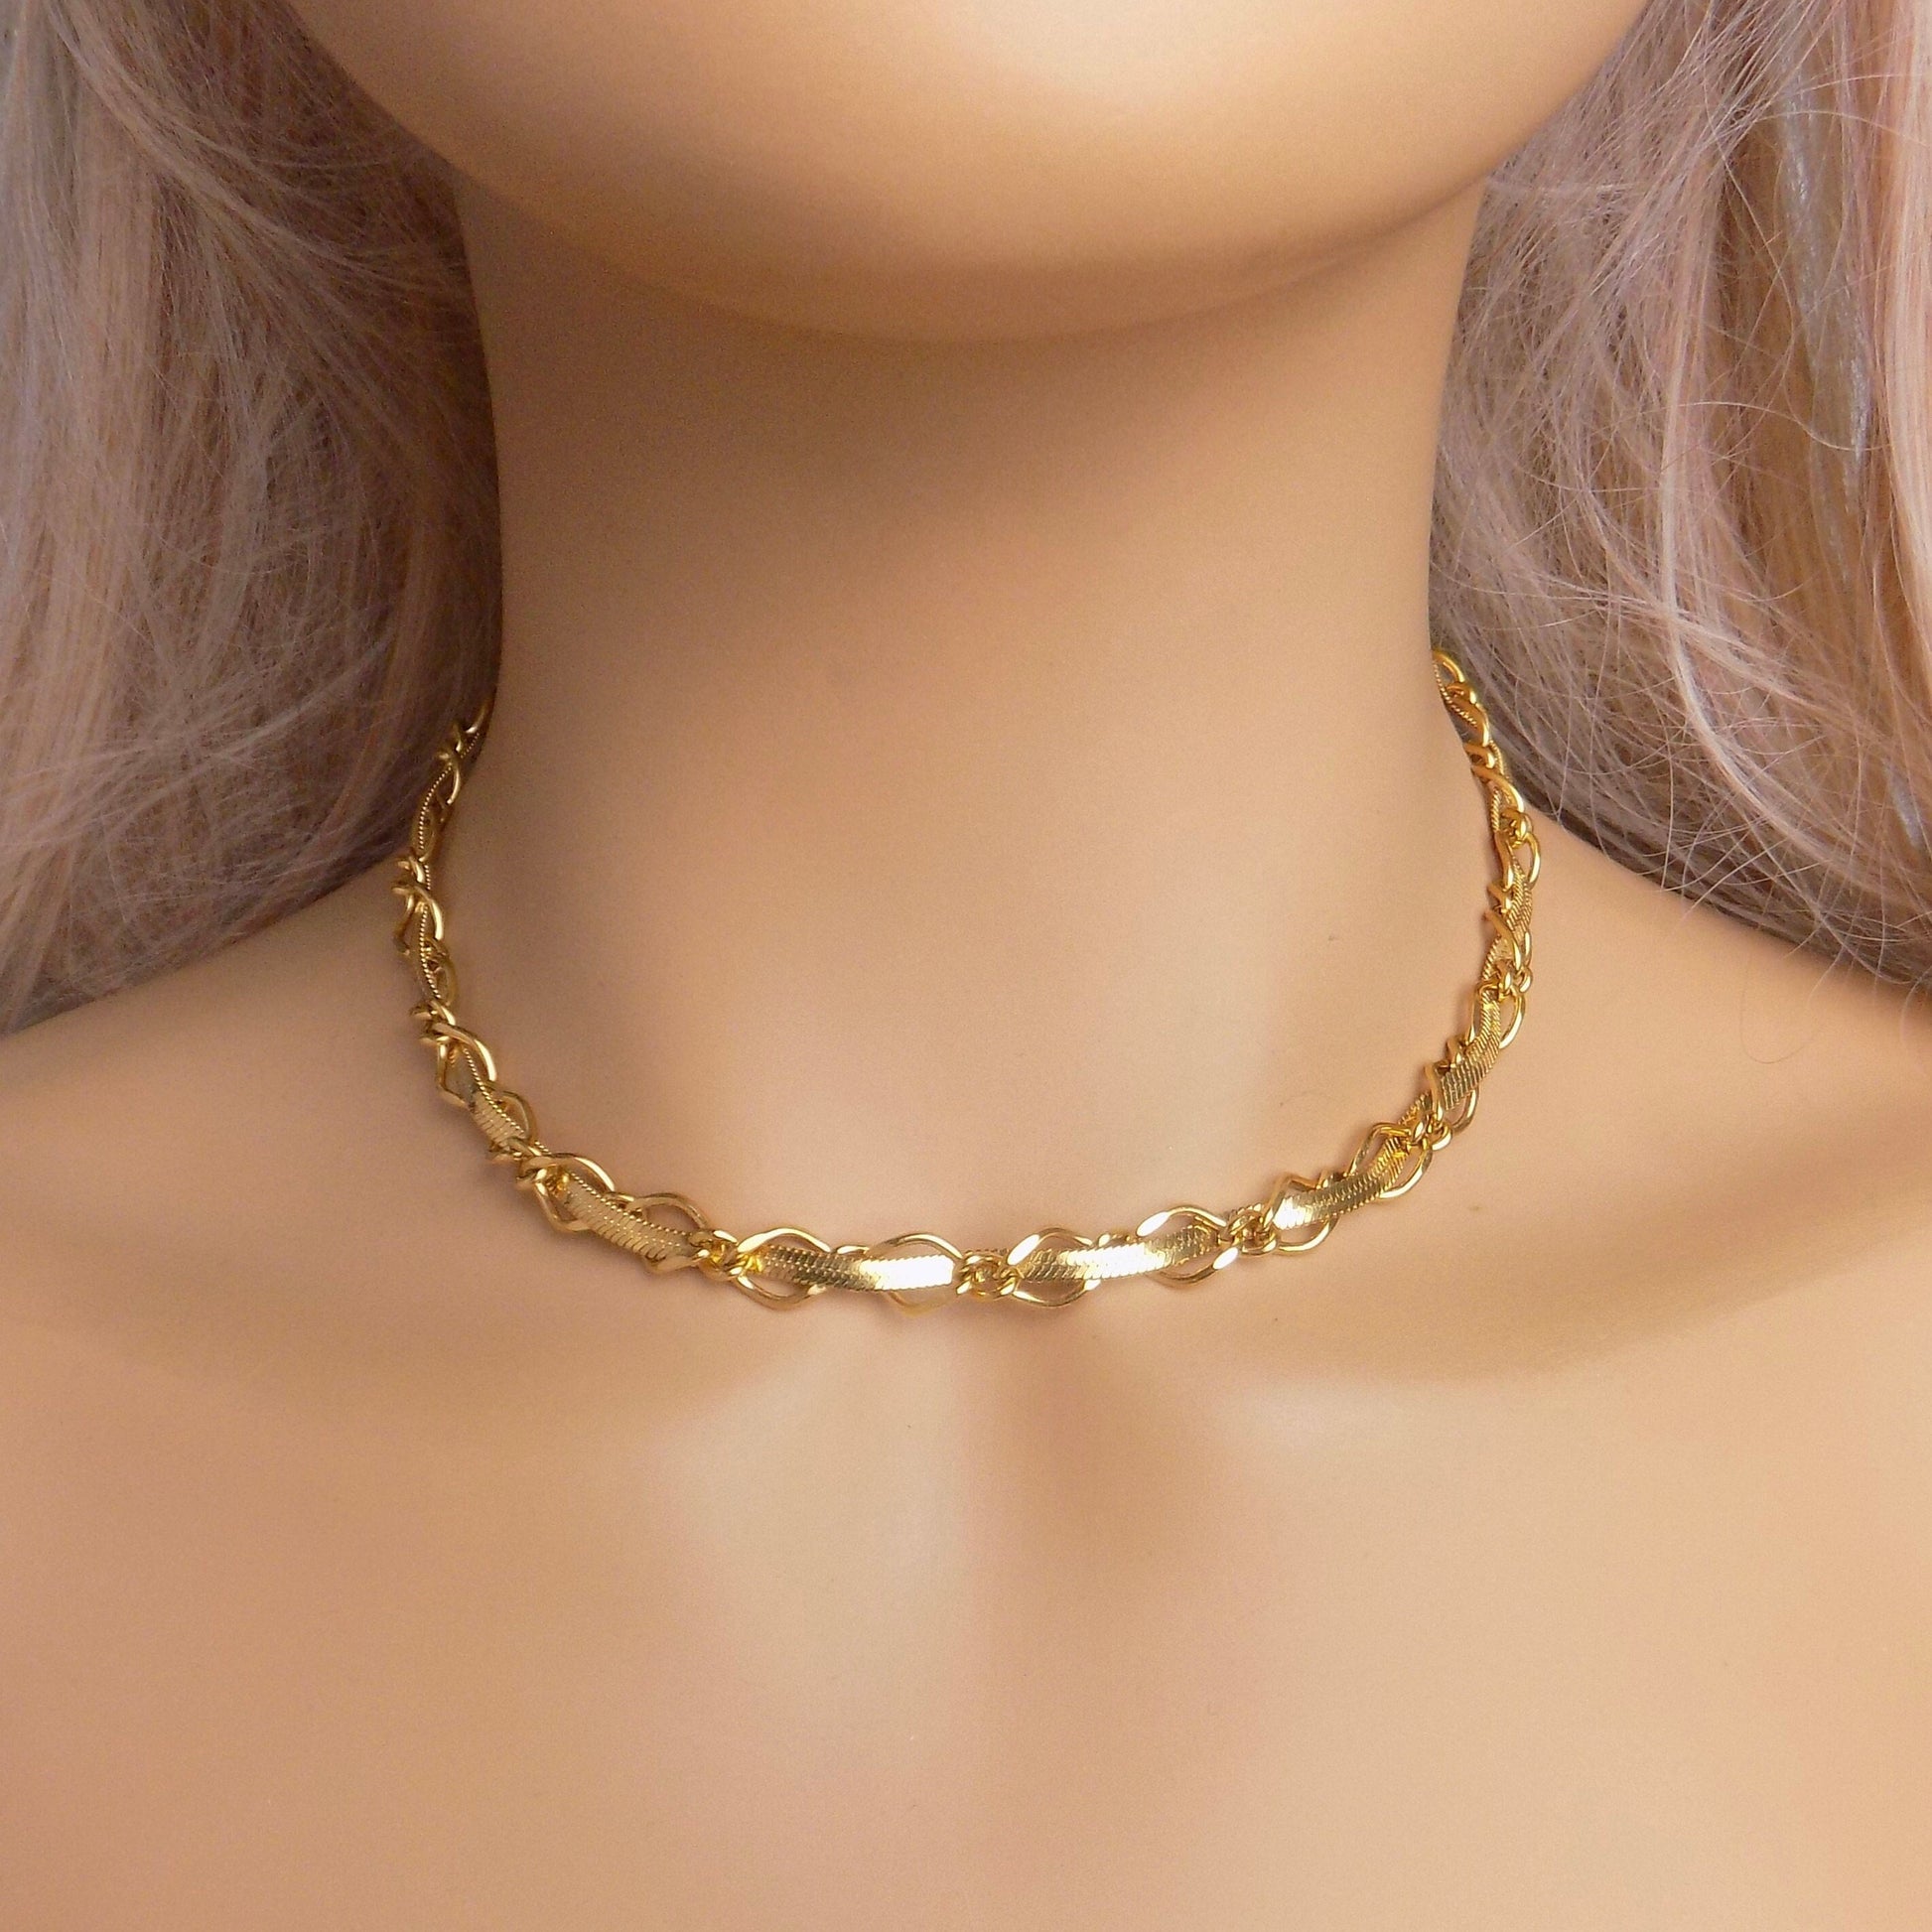 Unique Gold Choker For Women, Snake Chain, Herringbone Chain, 18K Gold Stainless Steel, Modern Trendy, M7-81